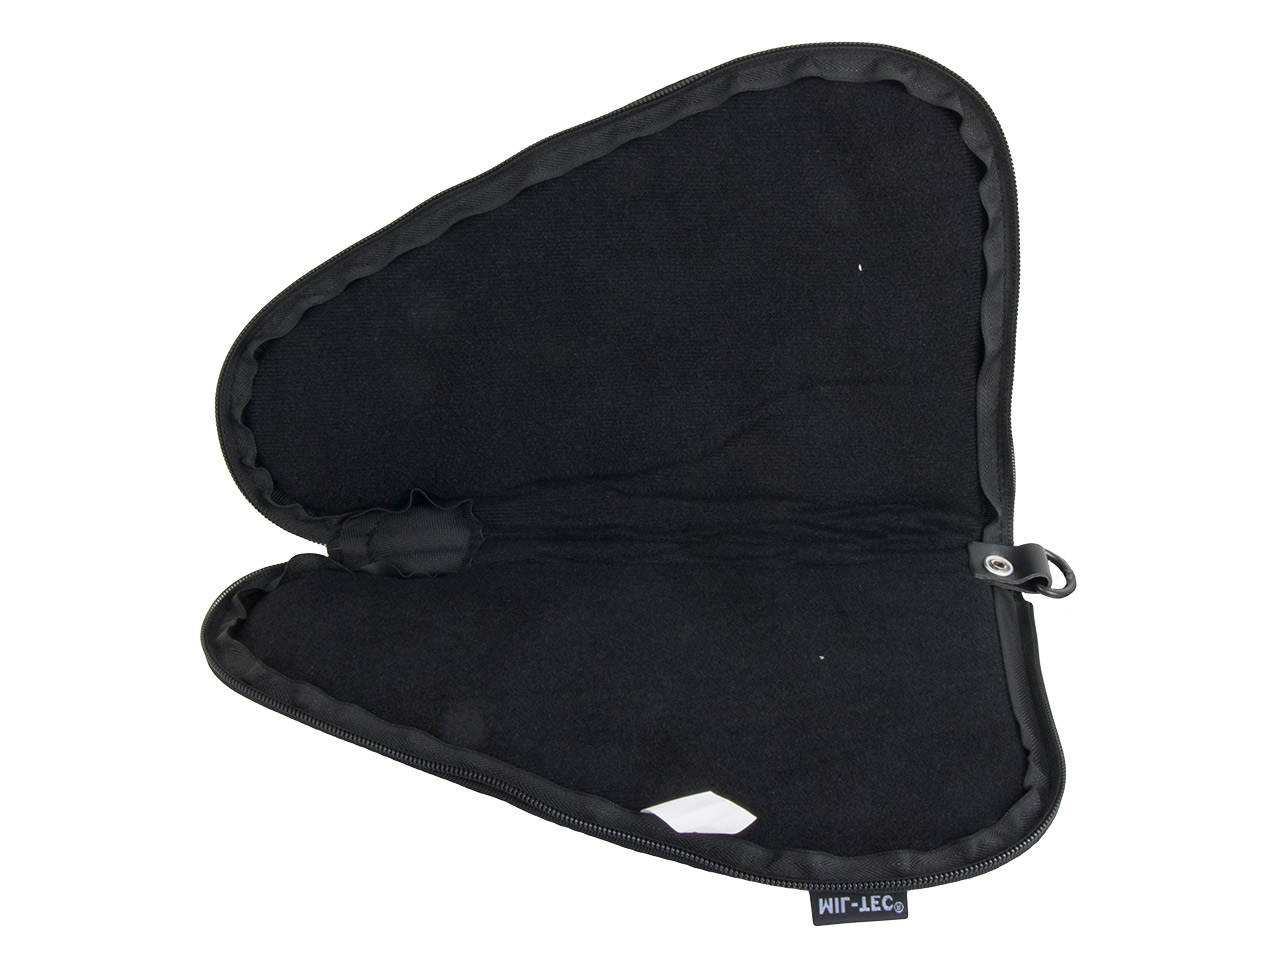 Pistolenfutteral Pistolentasche Transporttasche Mil-Tec 27 x 15 cm abschließbar für kleine Pistolen und Revolver schwarz